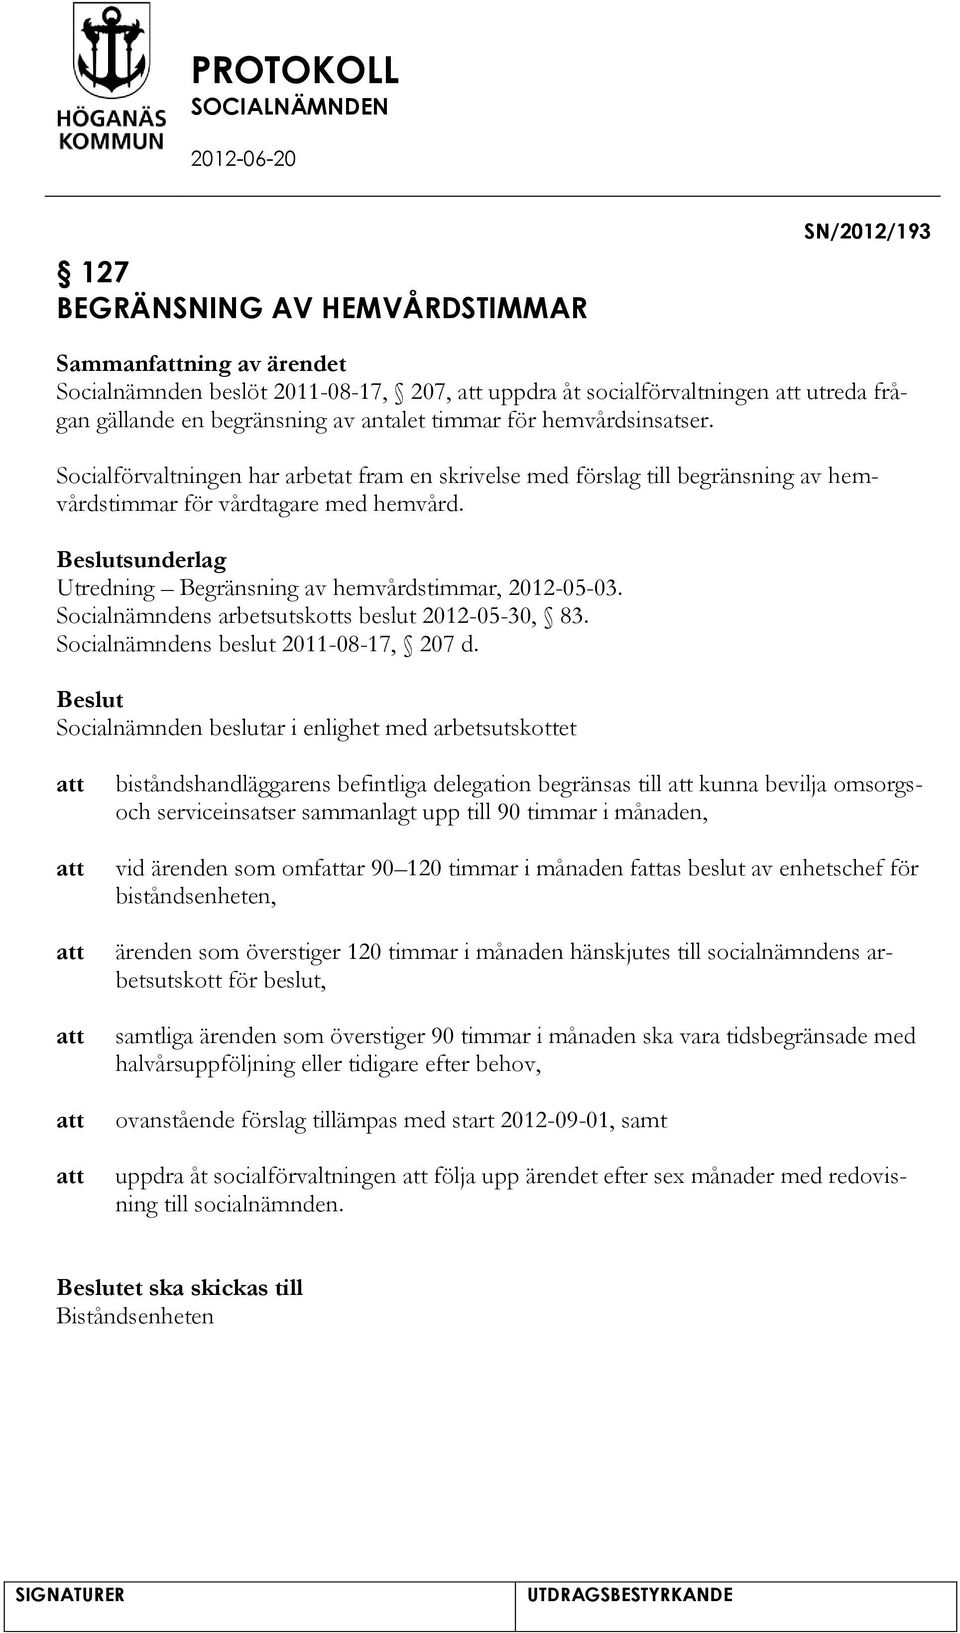 sunderlag Utredning Begränsning av hemvårdstimmar, 2012-05-03. Socialnämndens arbetsutskotts beslut 2012-05-30, 83. Socialnämndens beslut 2011-08-17, 207 d.